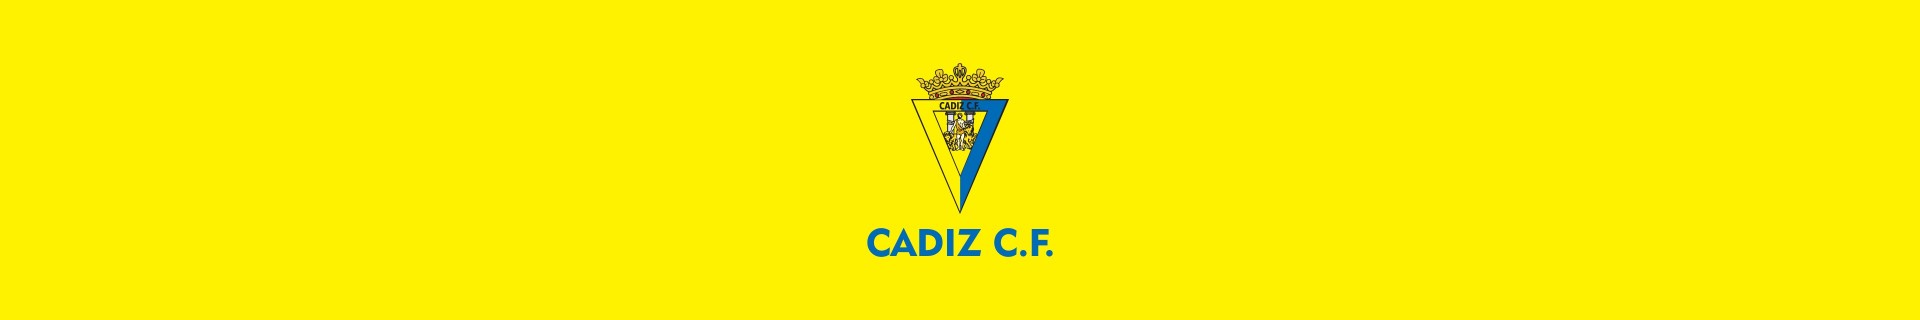 Calcetines del Cádiz CF